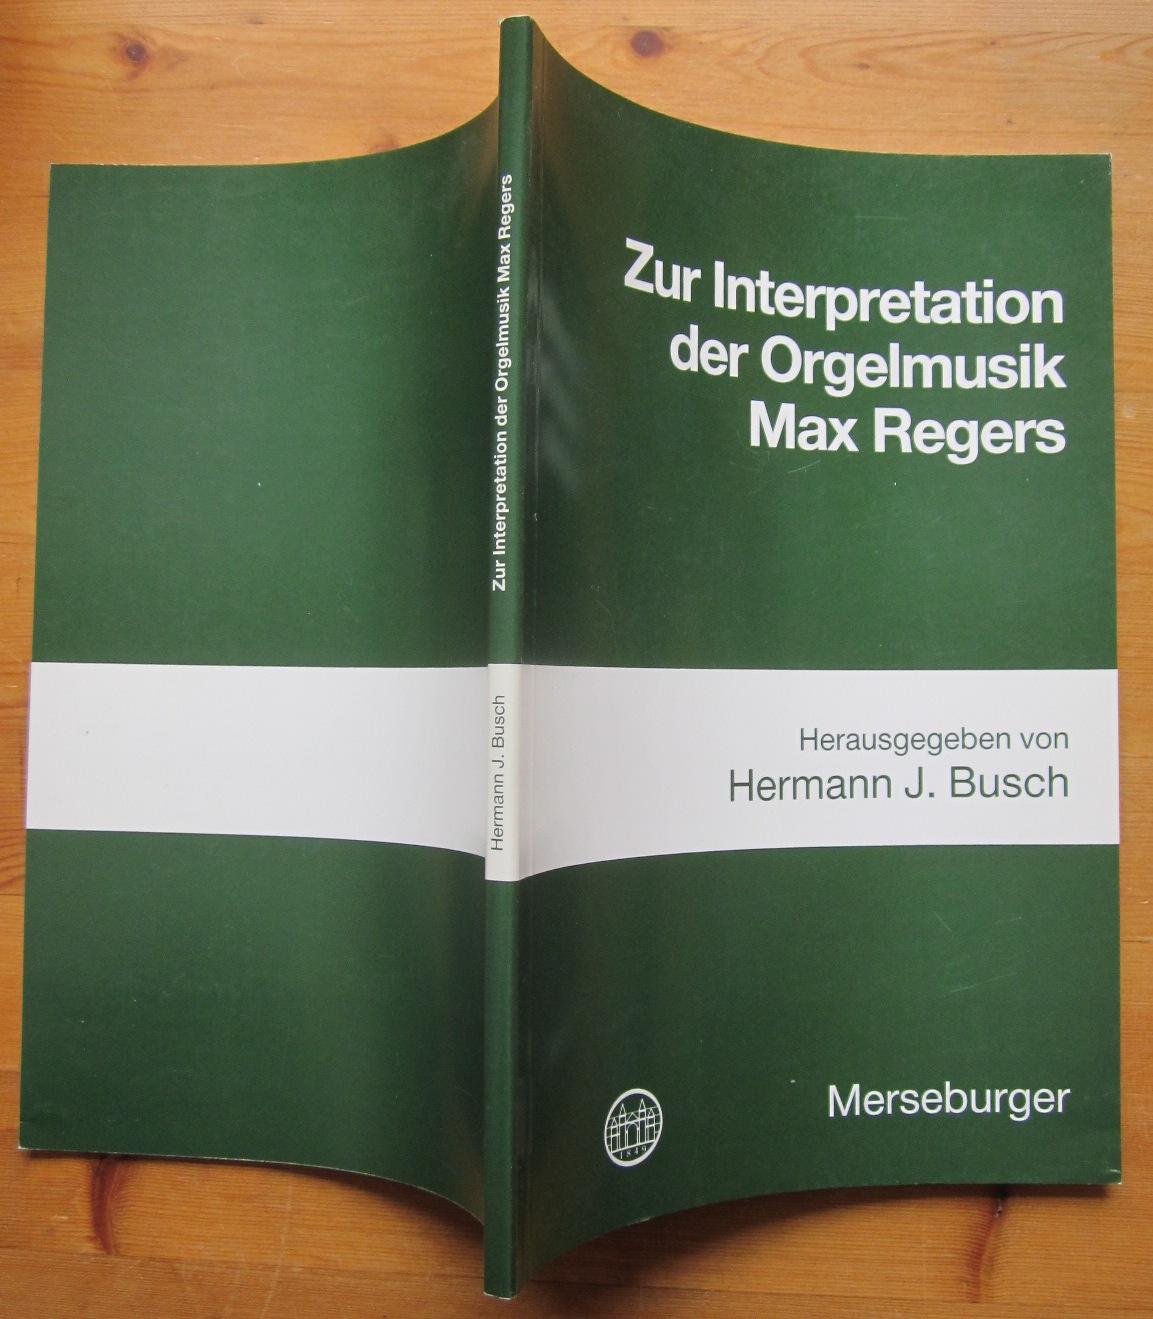 Zur Interpretation der Orgelmusik Max Regers. - Busch, Hermann J. (Herausgeber)